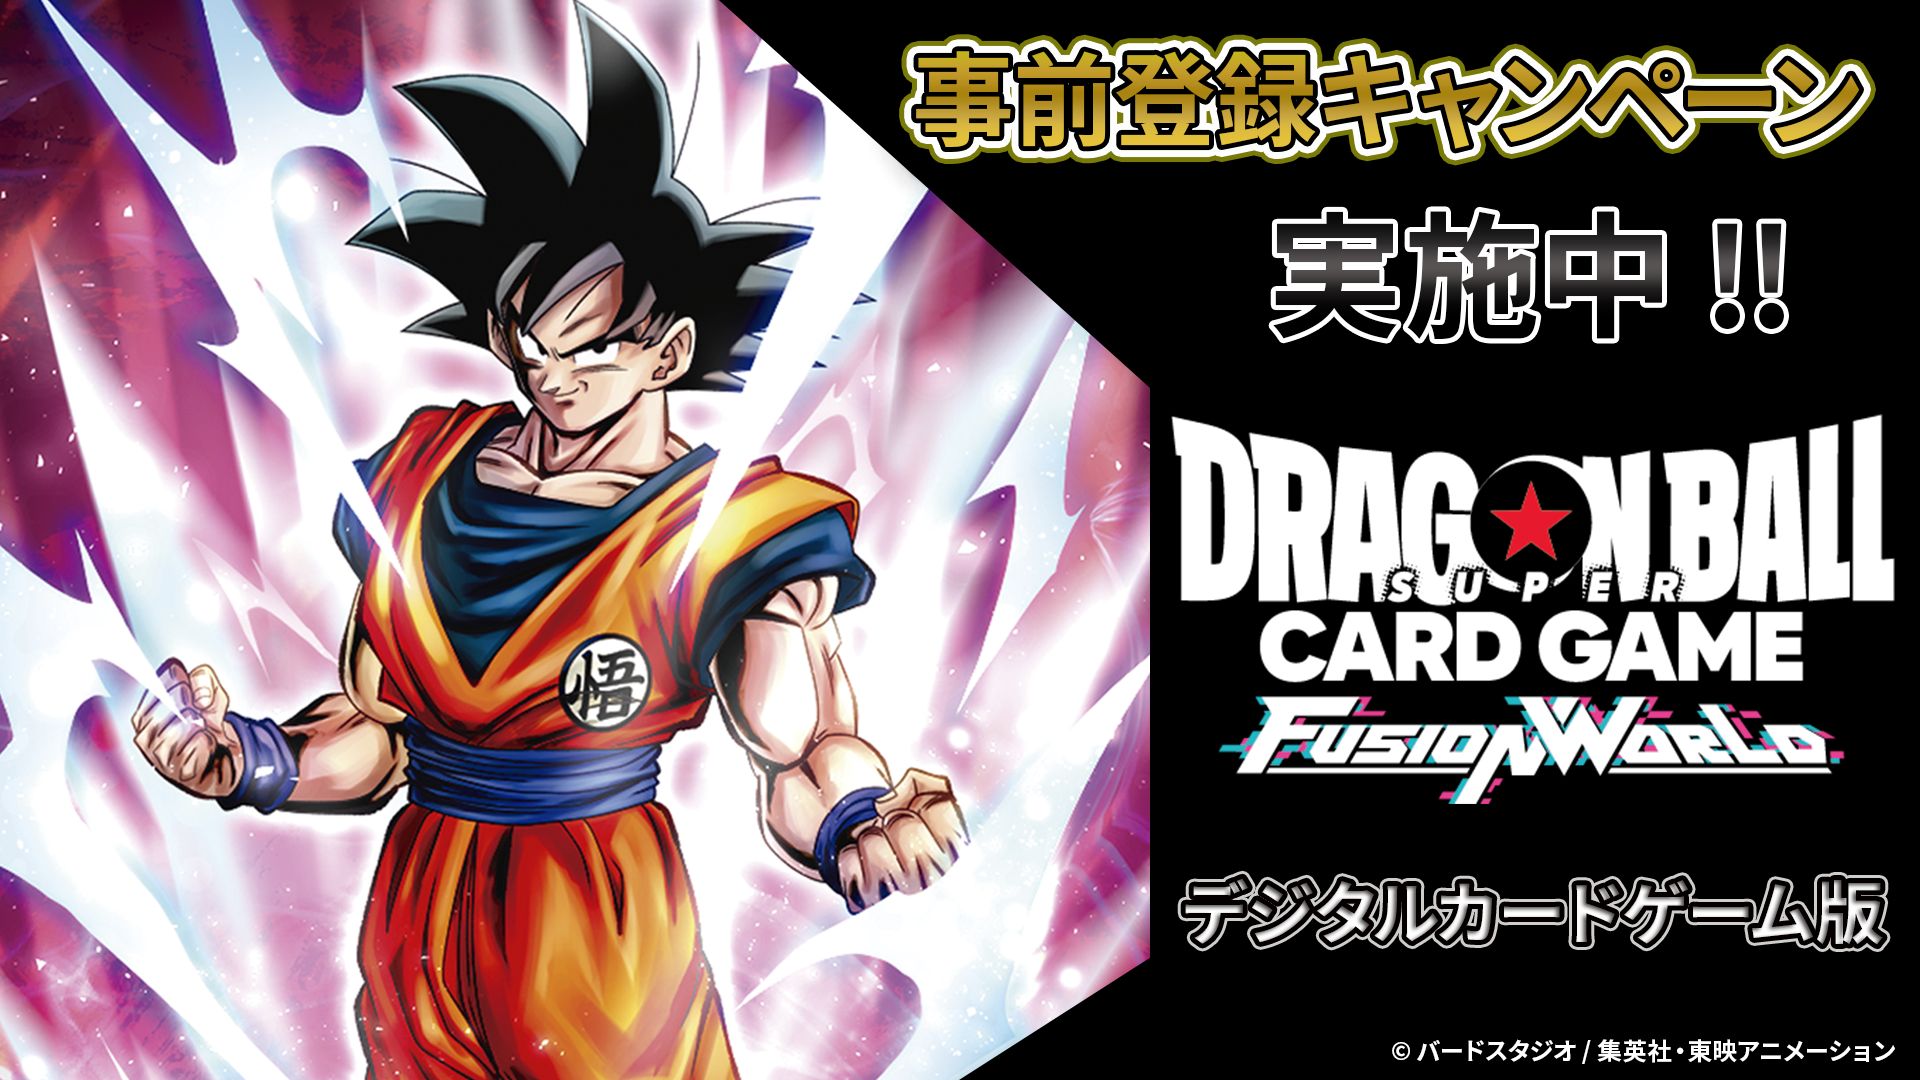 Campagnes de pré-lancement organisées pour la version numérique de DRAGON BALL SUPER CARD GAME Fusion World !